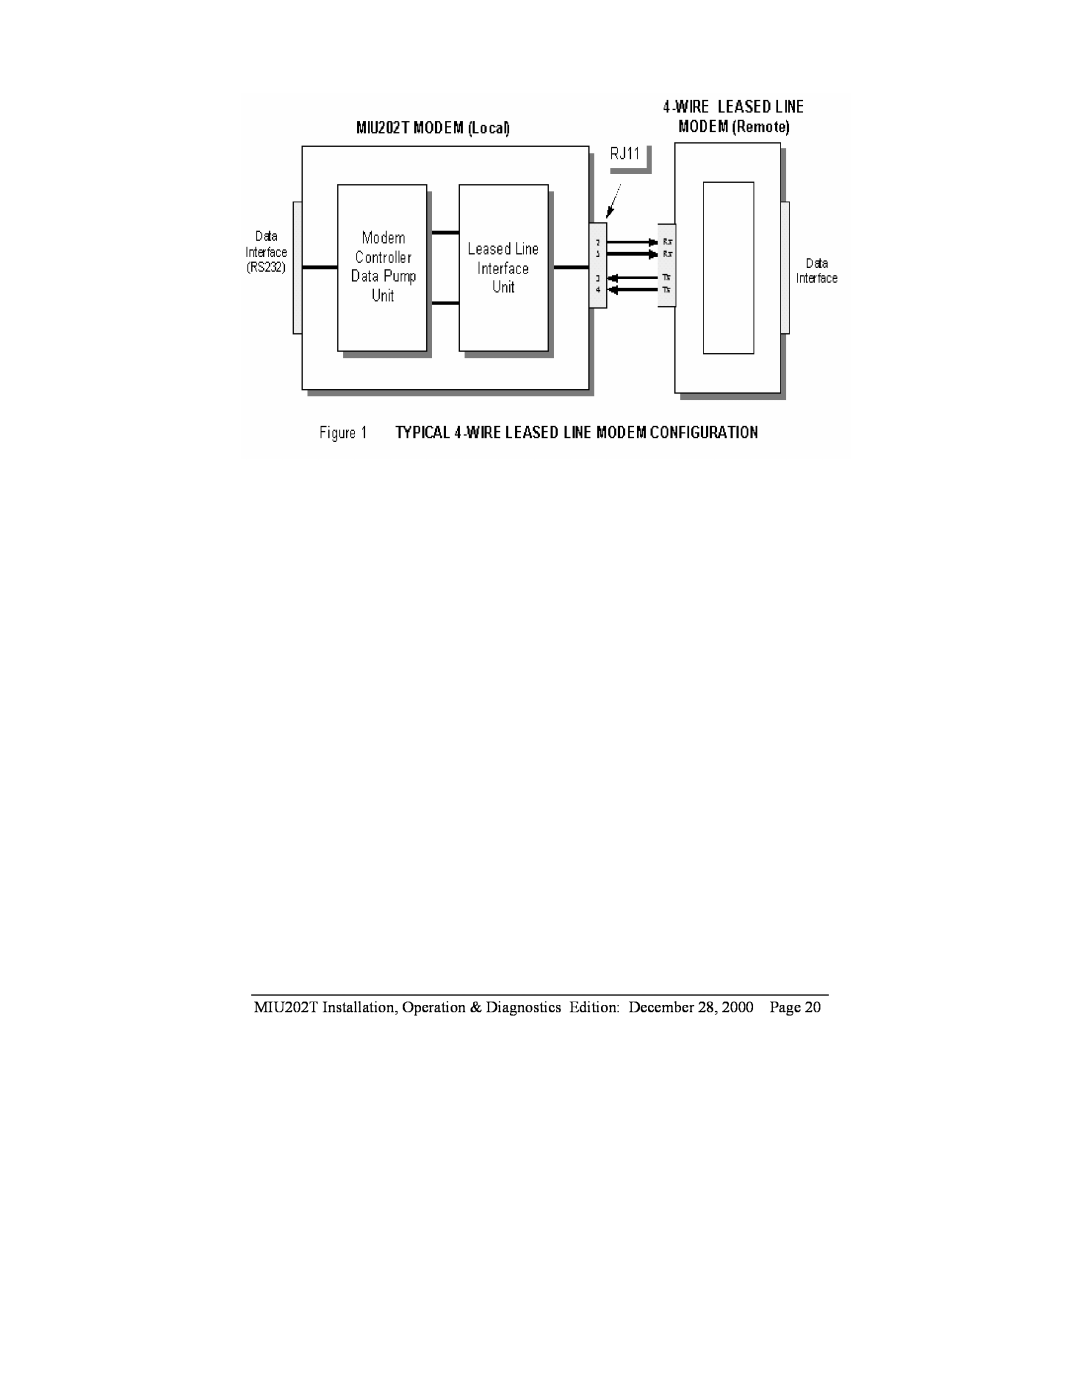 Telenetics MIU202T Modem manual 